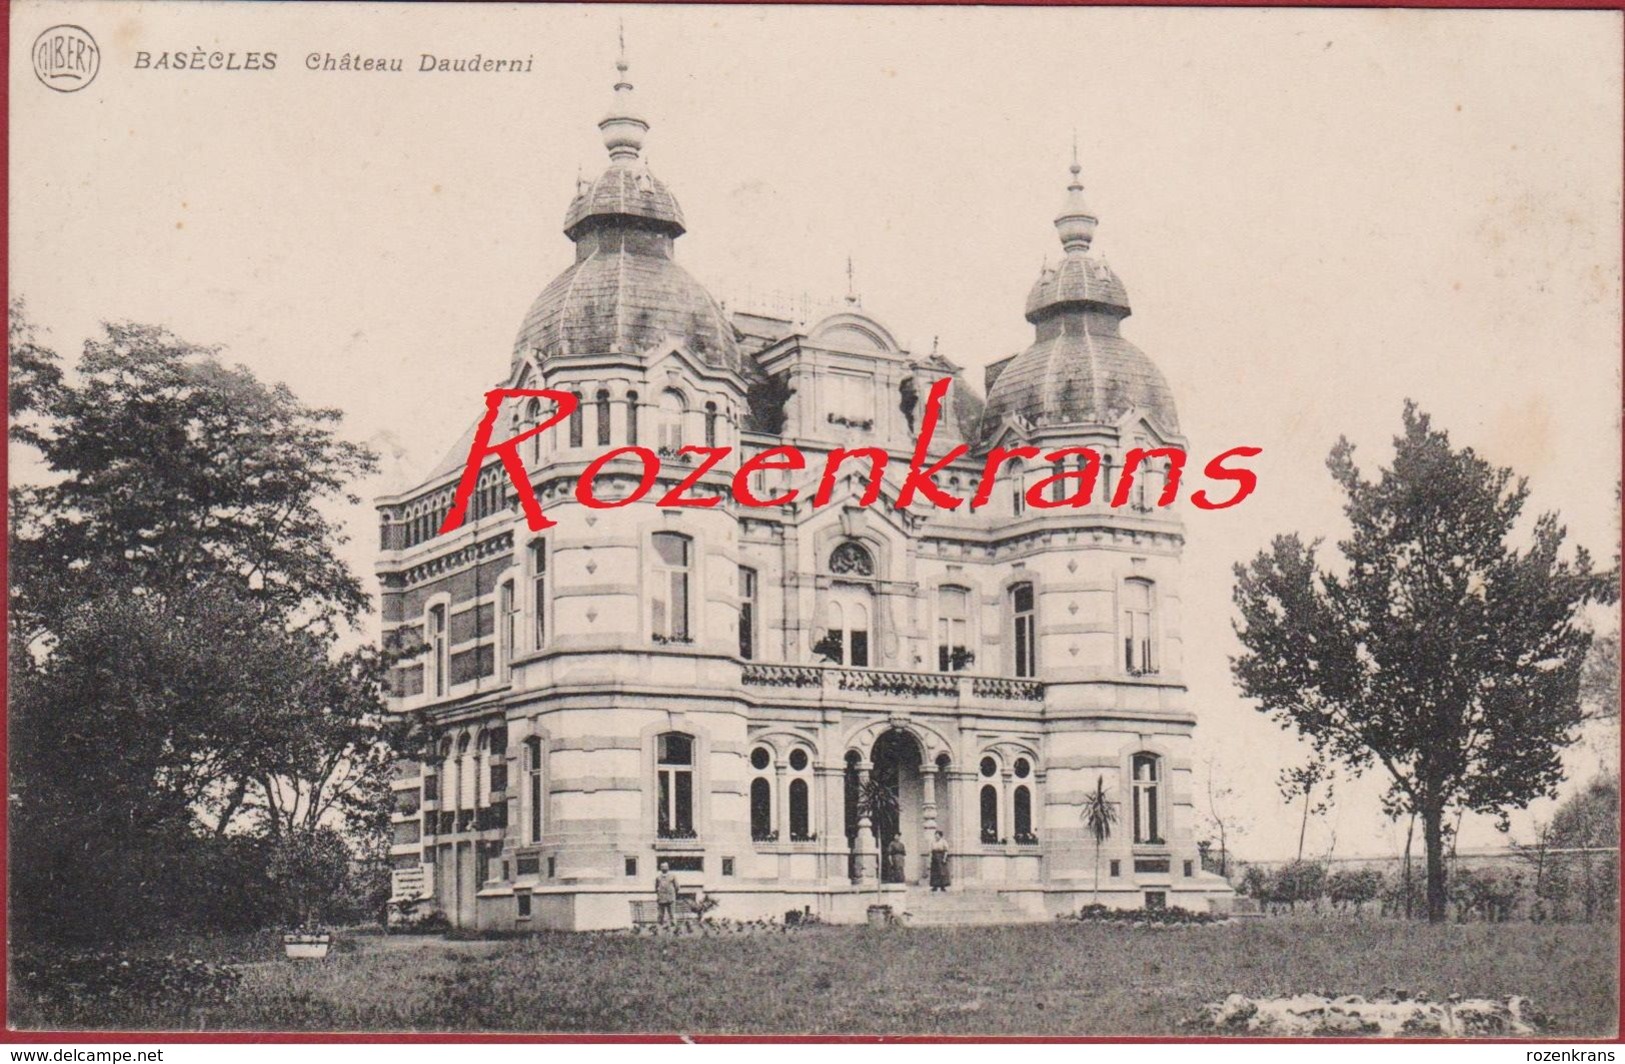 Basecles Chateau Dauderni Hainaut Henegouwen Beloeil 1914 Liefdesbrief Lettre D' Amour Love Letter (En Bon état) - Beloeil